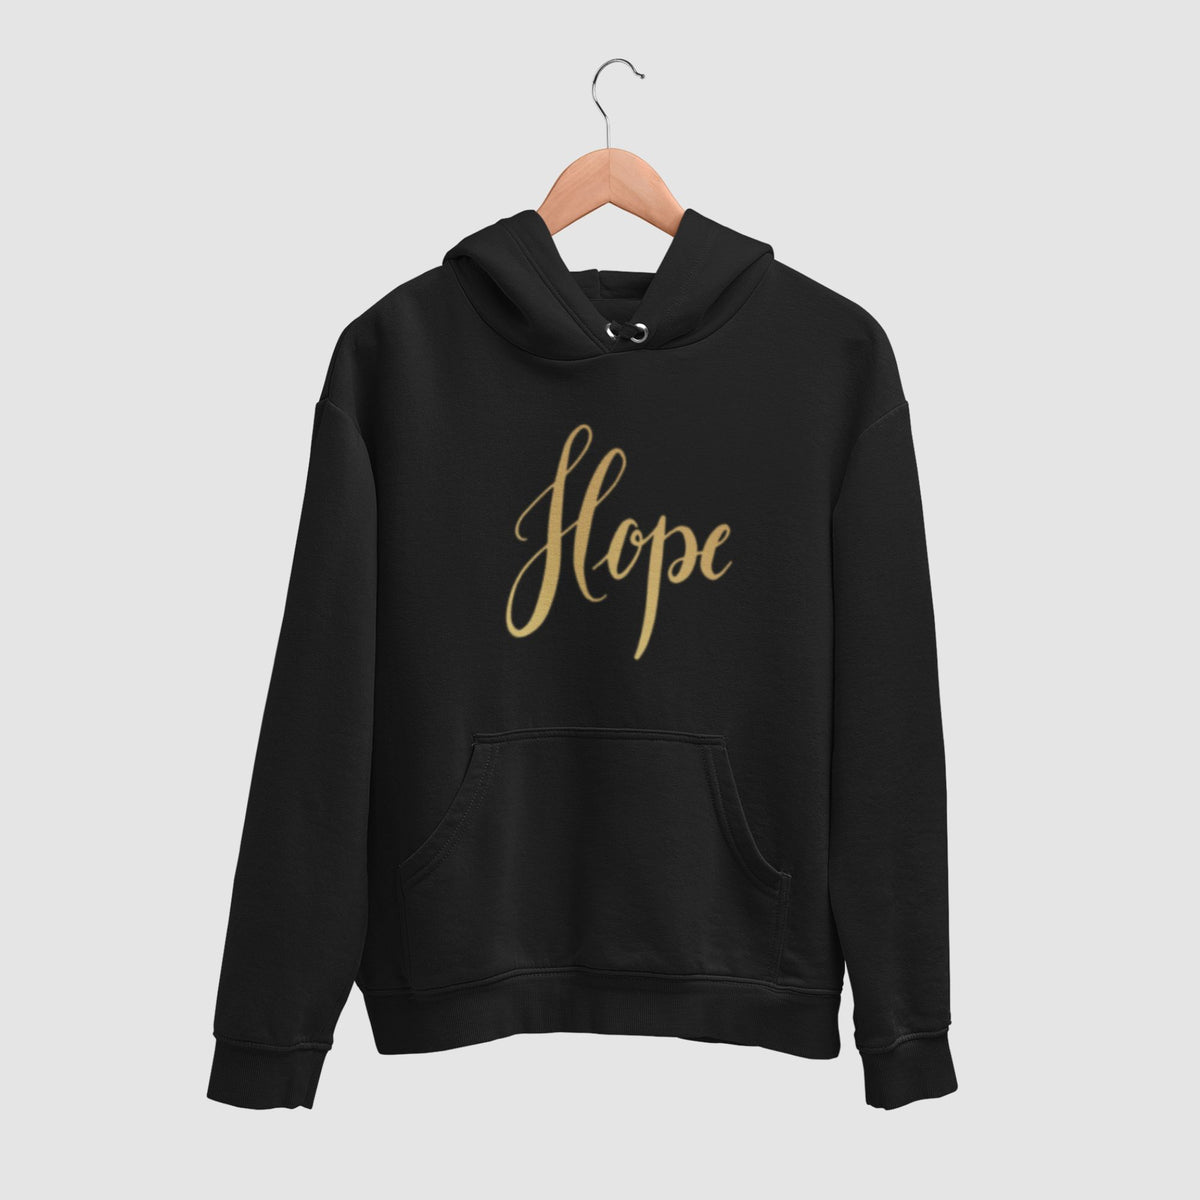    hope-black-printed-unisex-hanging-hoodie-gogirgit-com